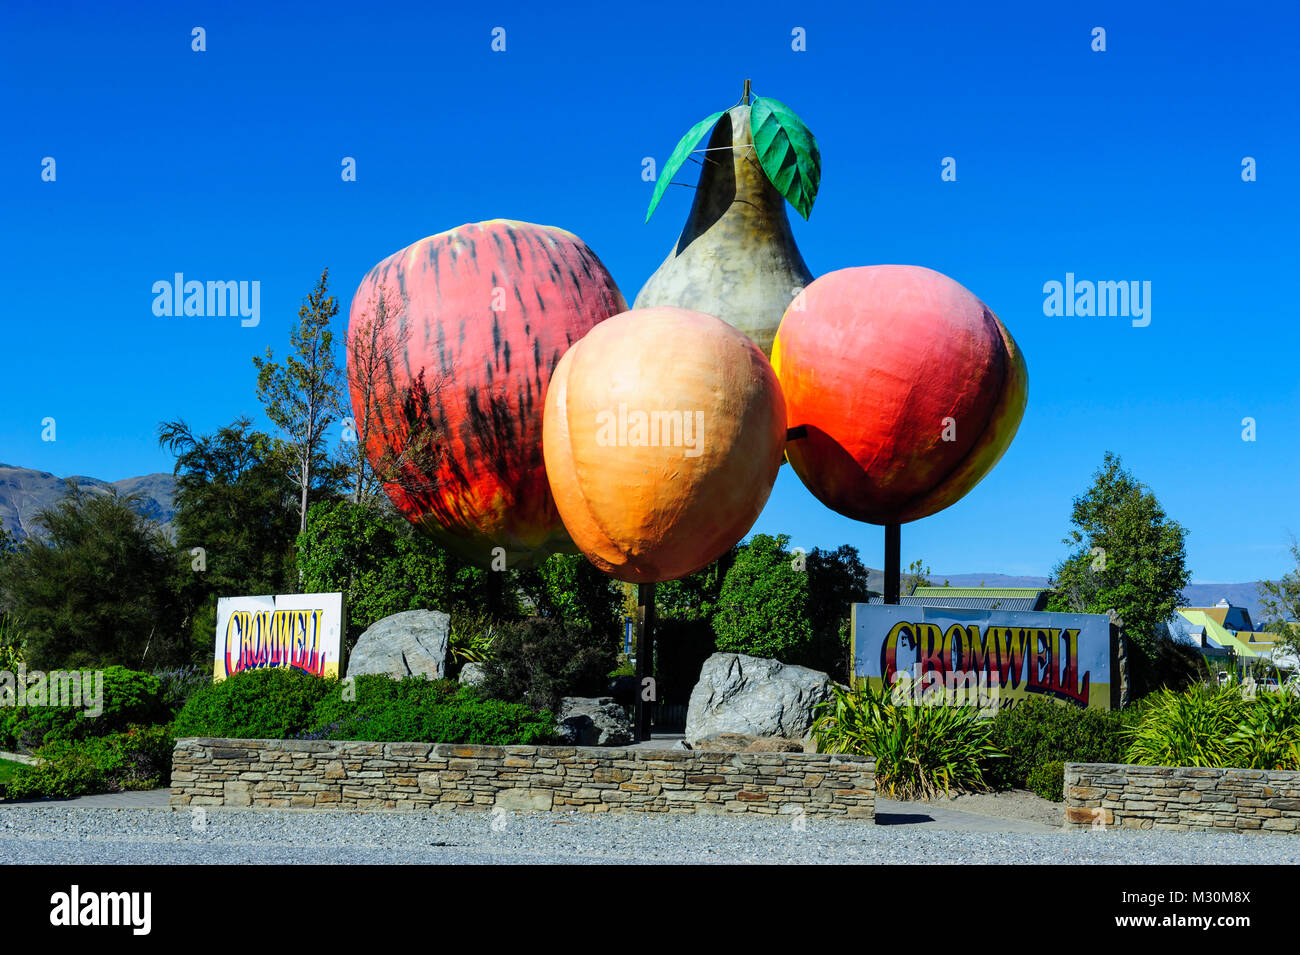 Fruits géant comme signe pour un fruit farm, près de Queenstown, île du Sud, Nouvelle-Zélande Banque D'Images